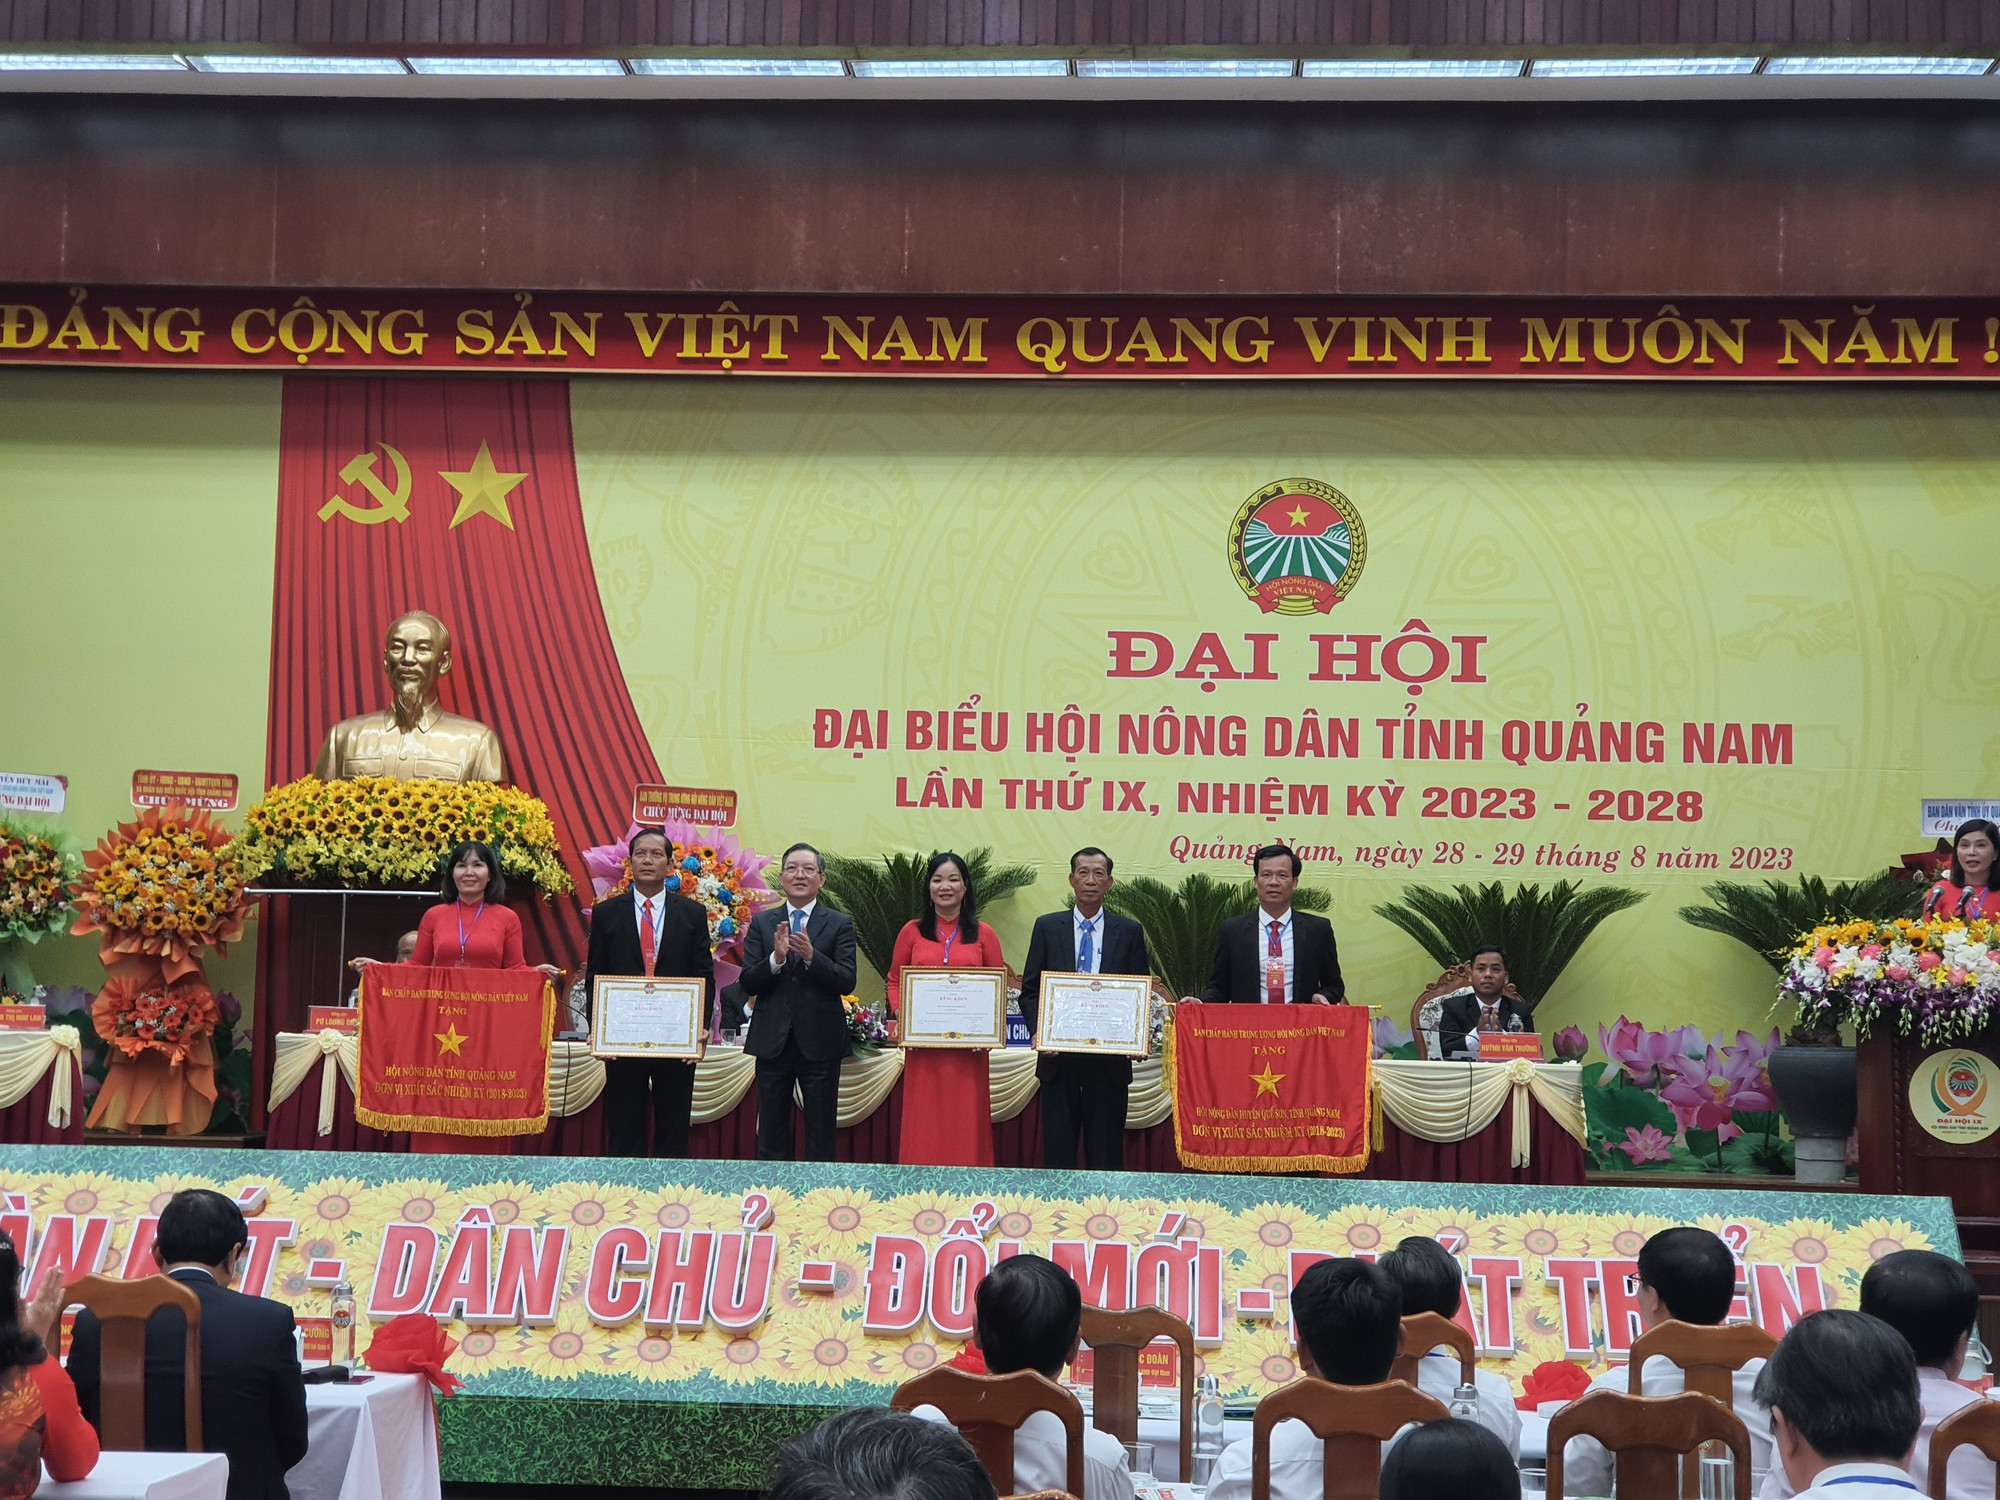 Chủ tịch BCH TƯ Hội NDVN Lương Quốc Đoàn: Hội Nông dân Quảng Nam đã củng cố và nâng cao vị thế   - Ảnh 6.